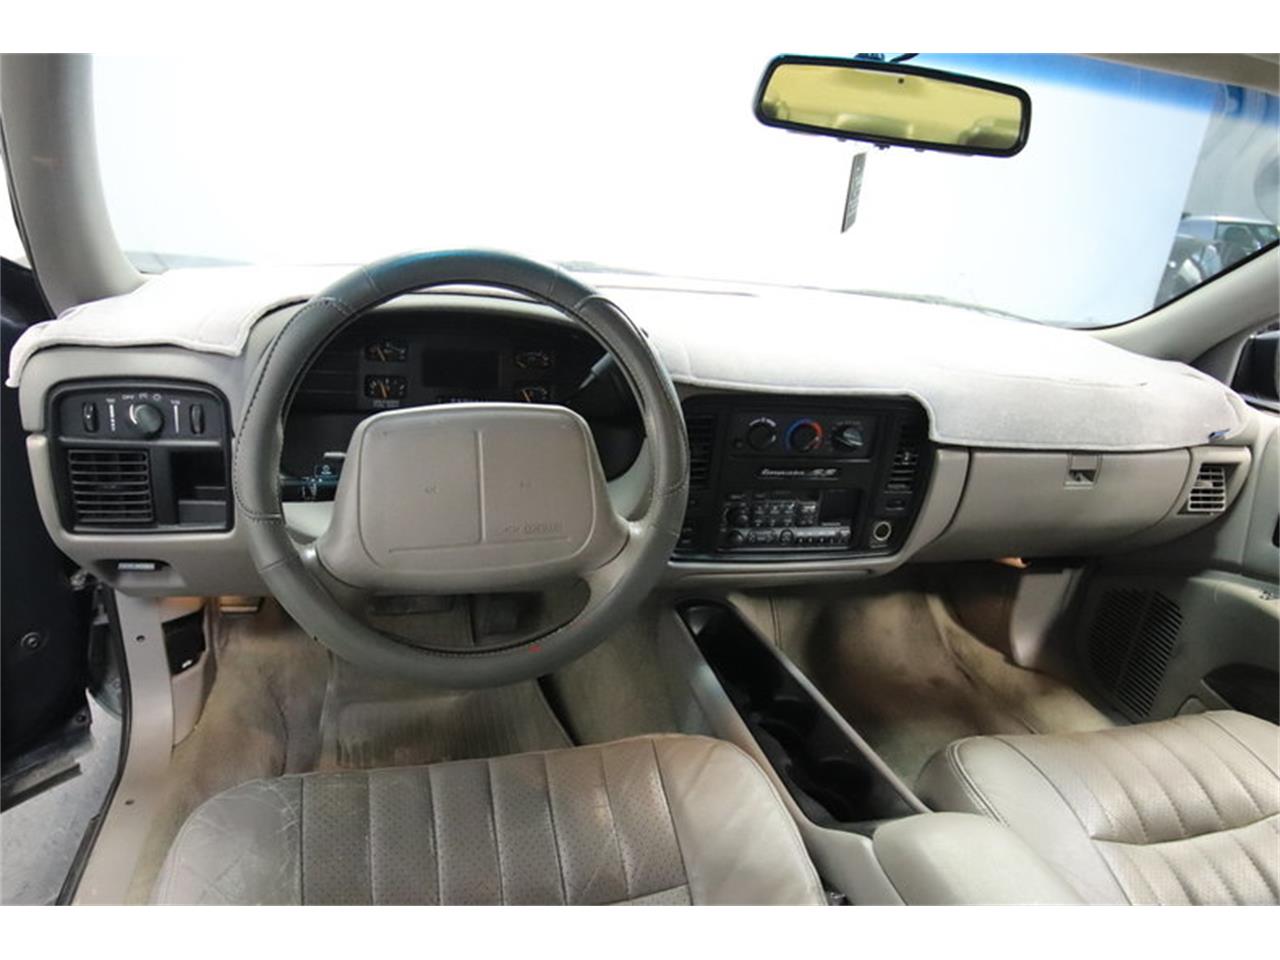 1995 Chevrolet Impala Ss For Sale Classiccars Com Cc 1106400